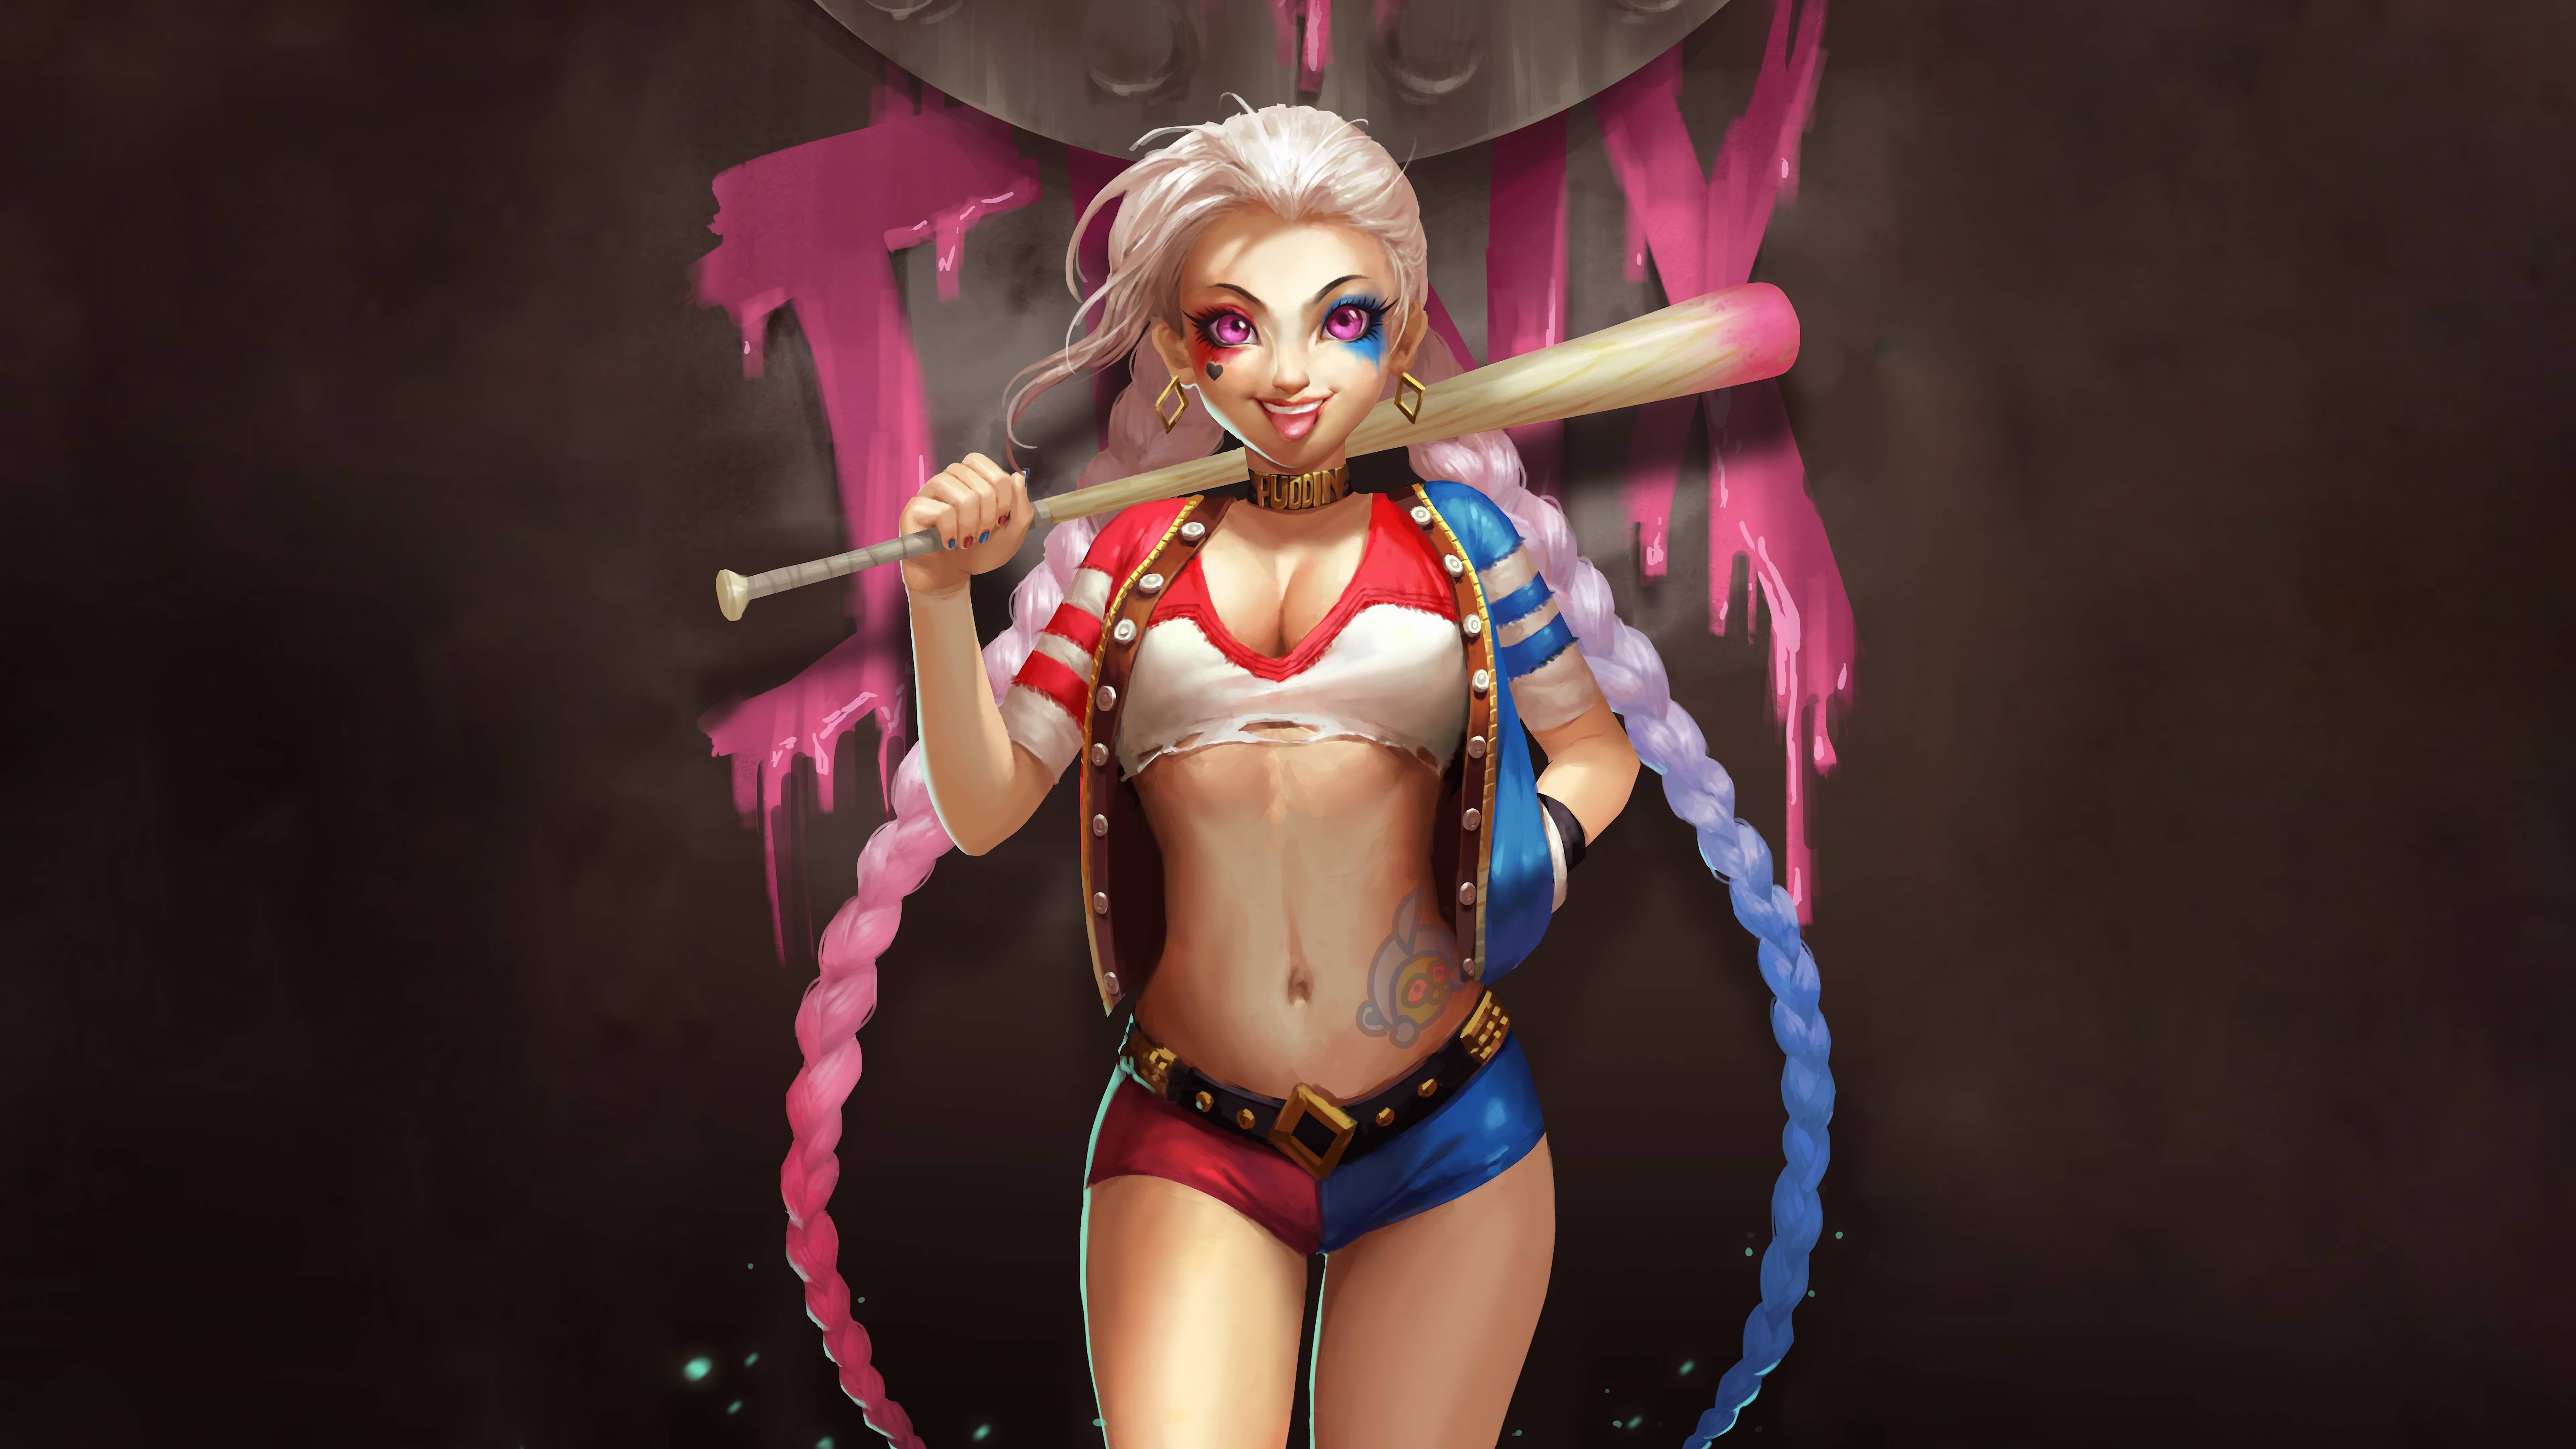 fondo de pantalla de harley quinn,cg artwork,rosado,figura de acción,personaje de ficción,juguete